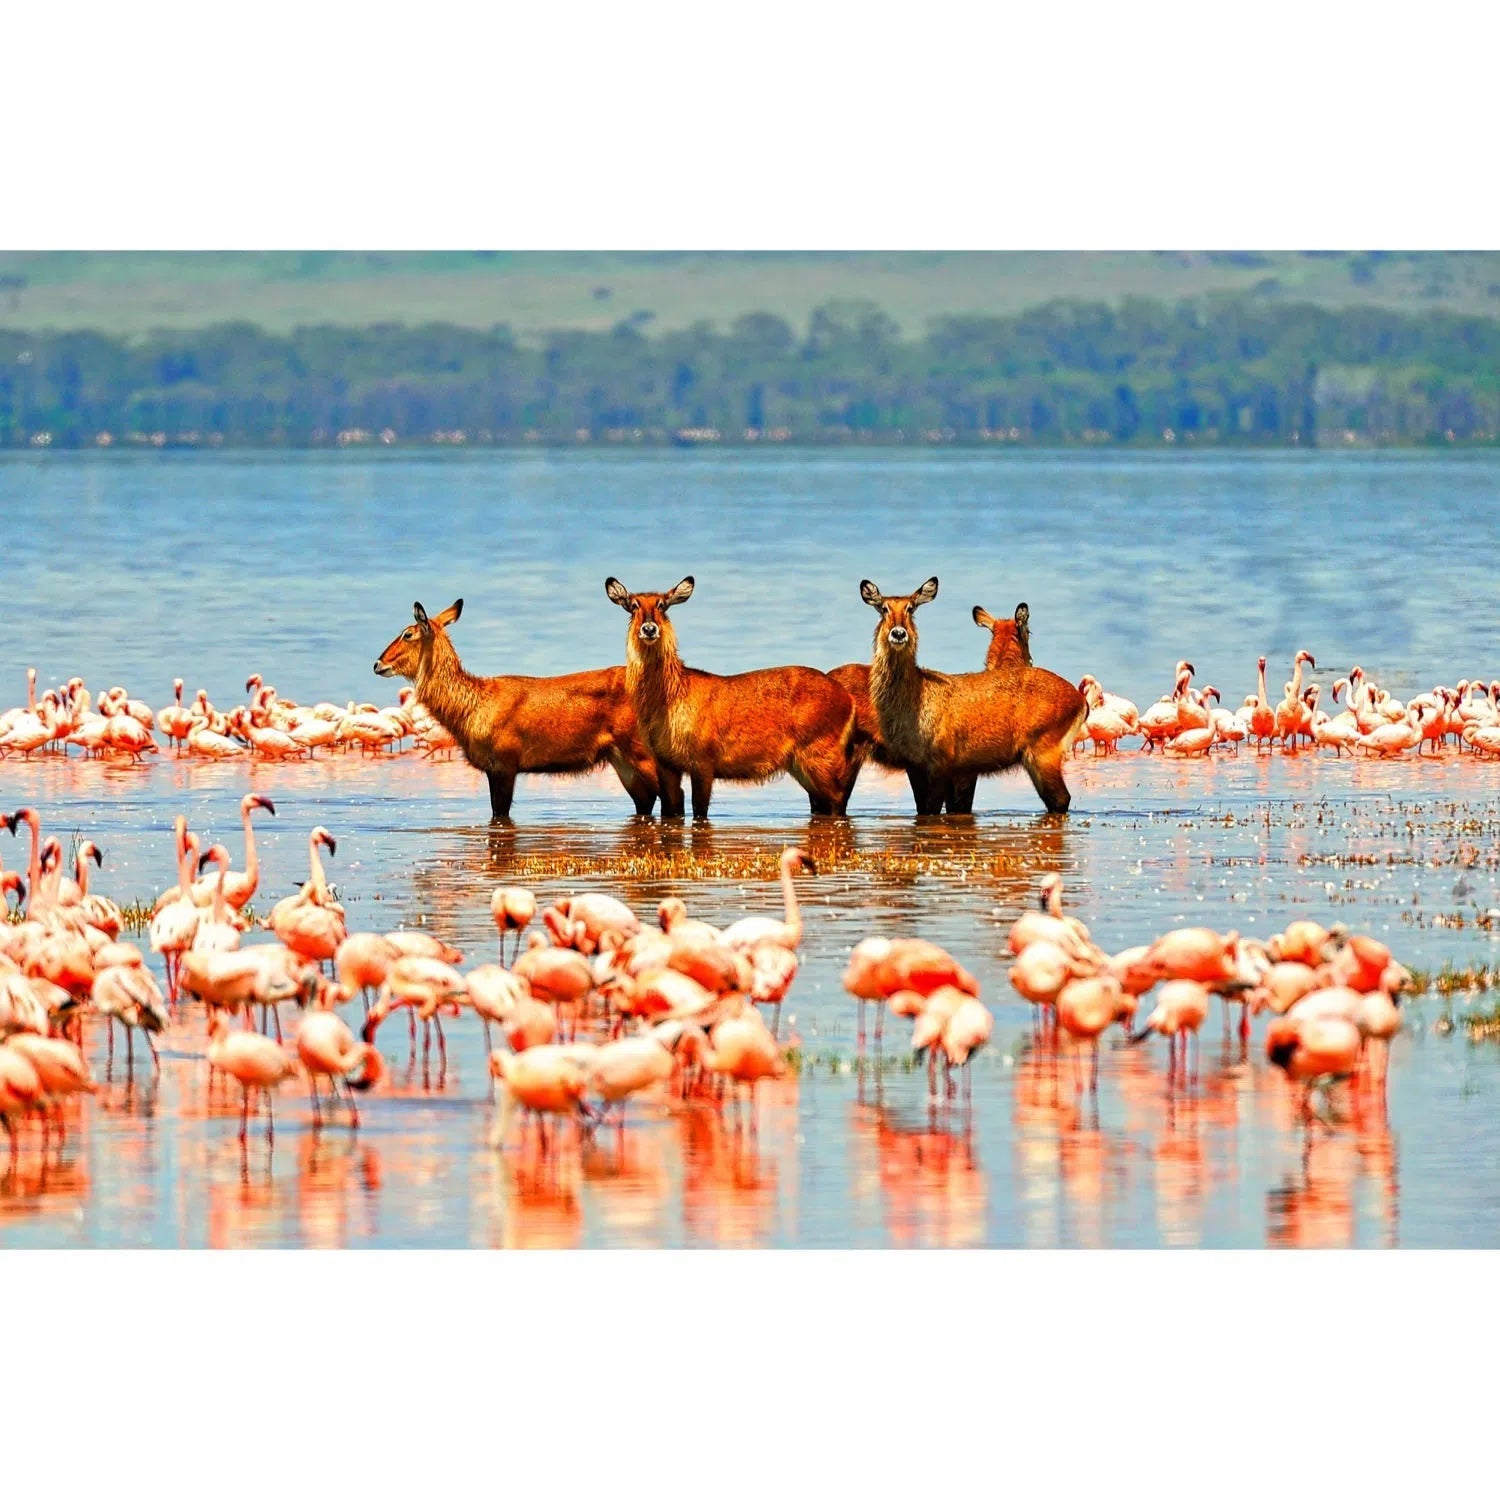 Antilopes entourés de flamants roses-Imagesdartistes